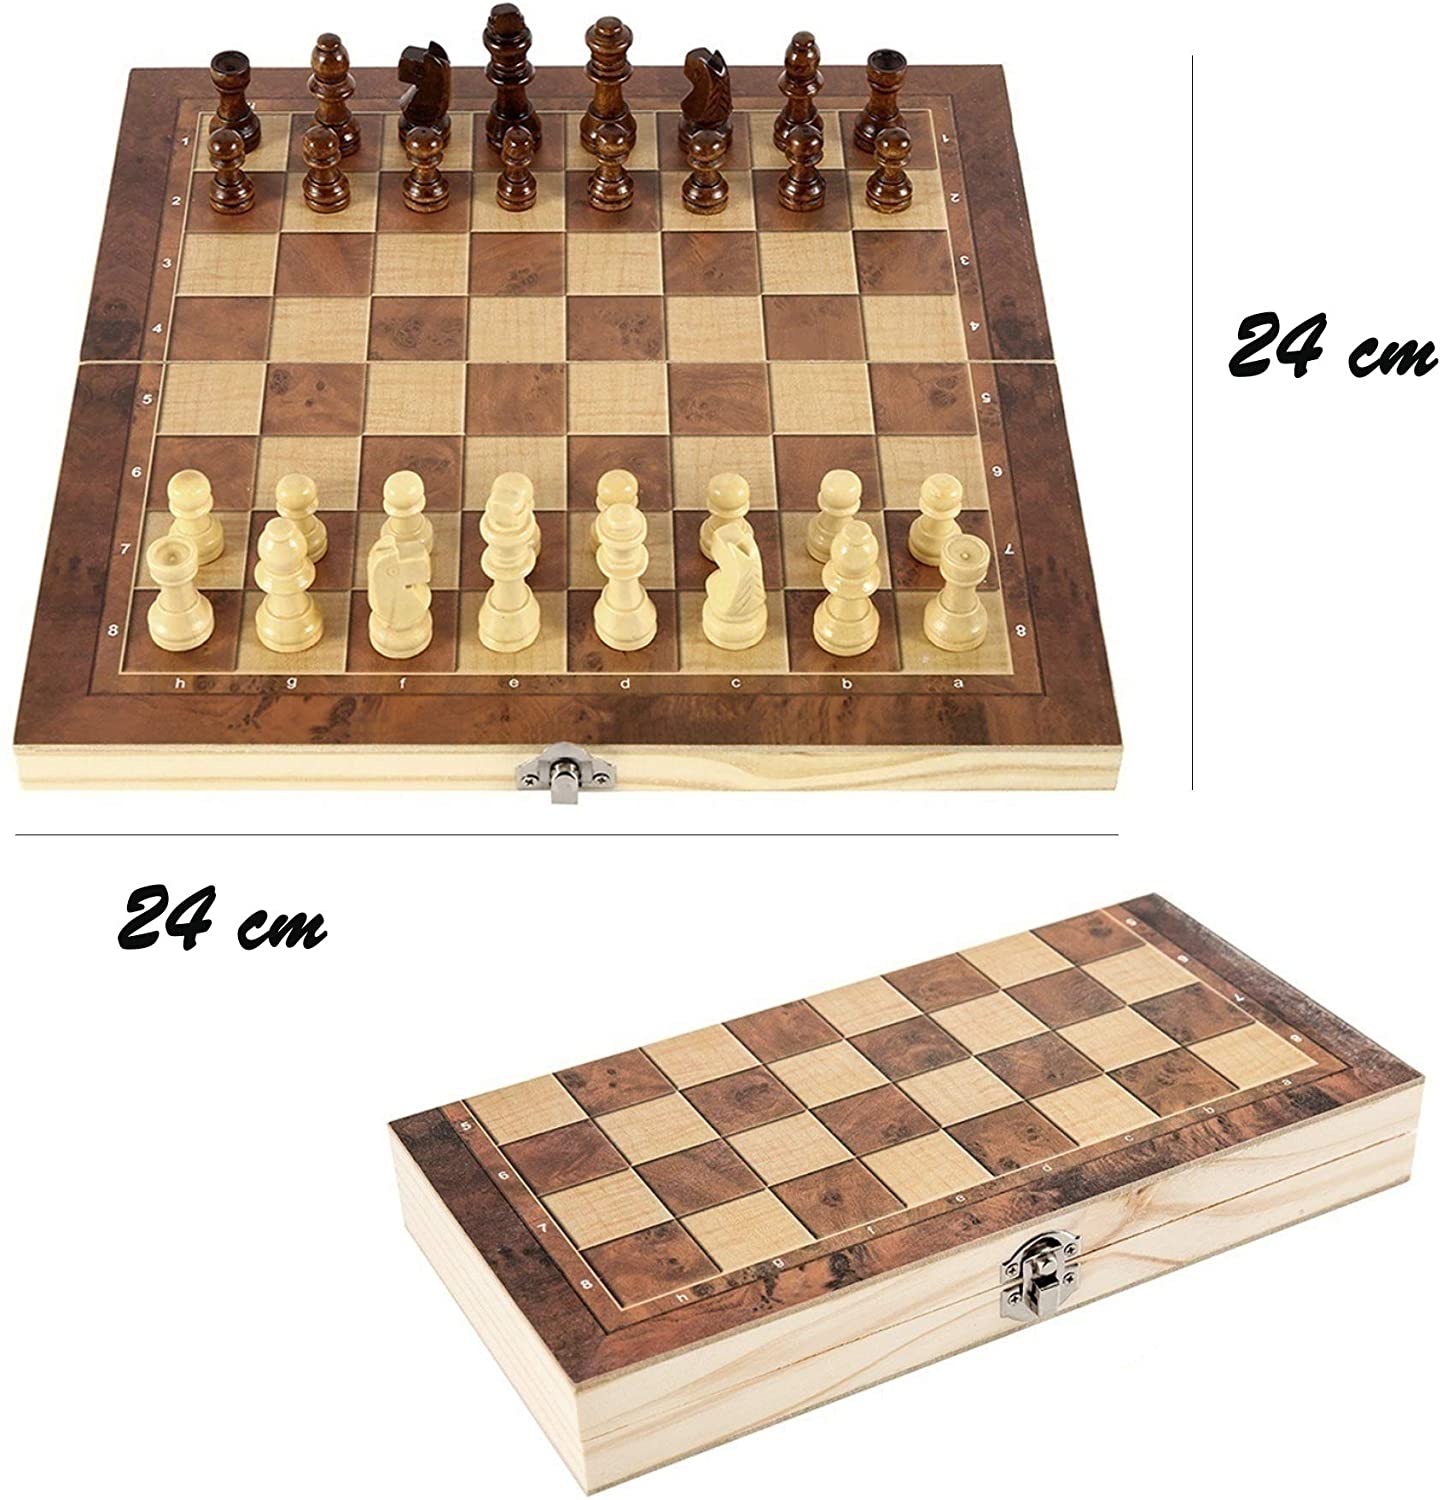 Memory Match Stick Chess, Memory Chess Wood, Wooden Memory Chess, Memory Chess, Chess Game Learning Toy, Chess Board Toy, Memory Chess Game - image 4 of 5